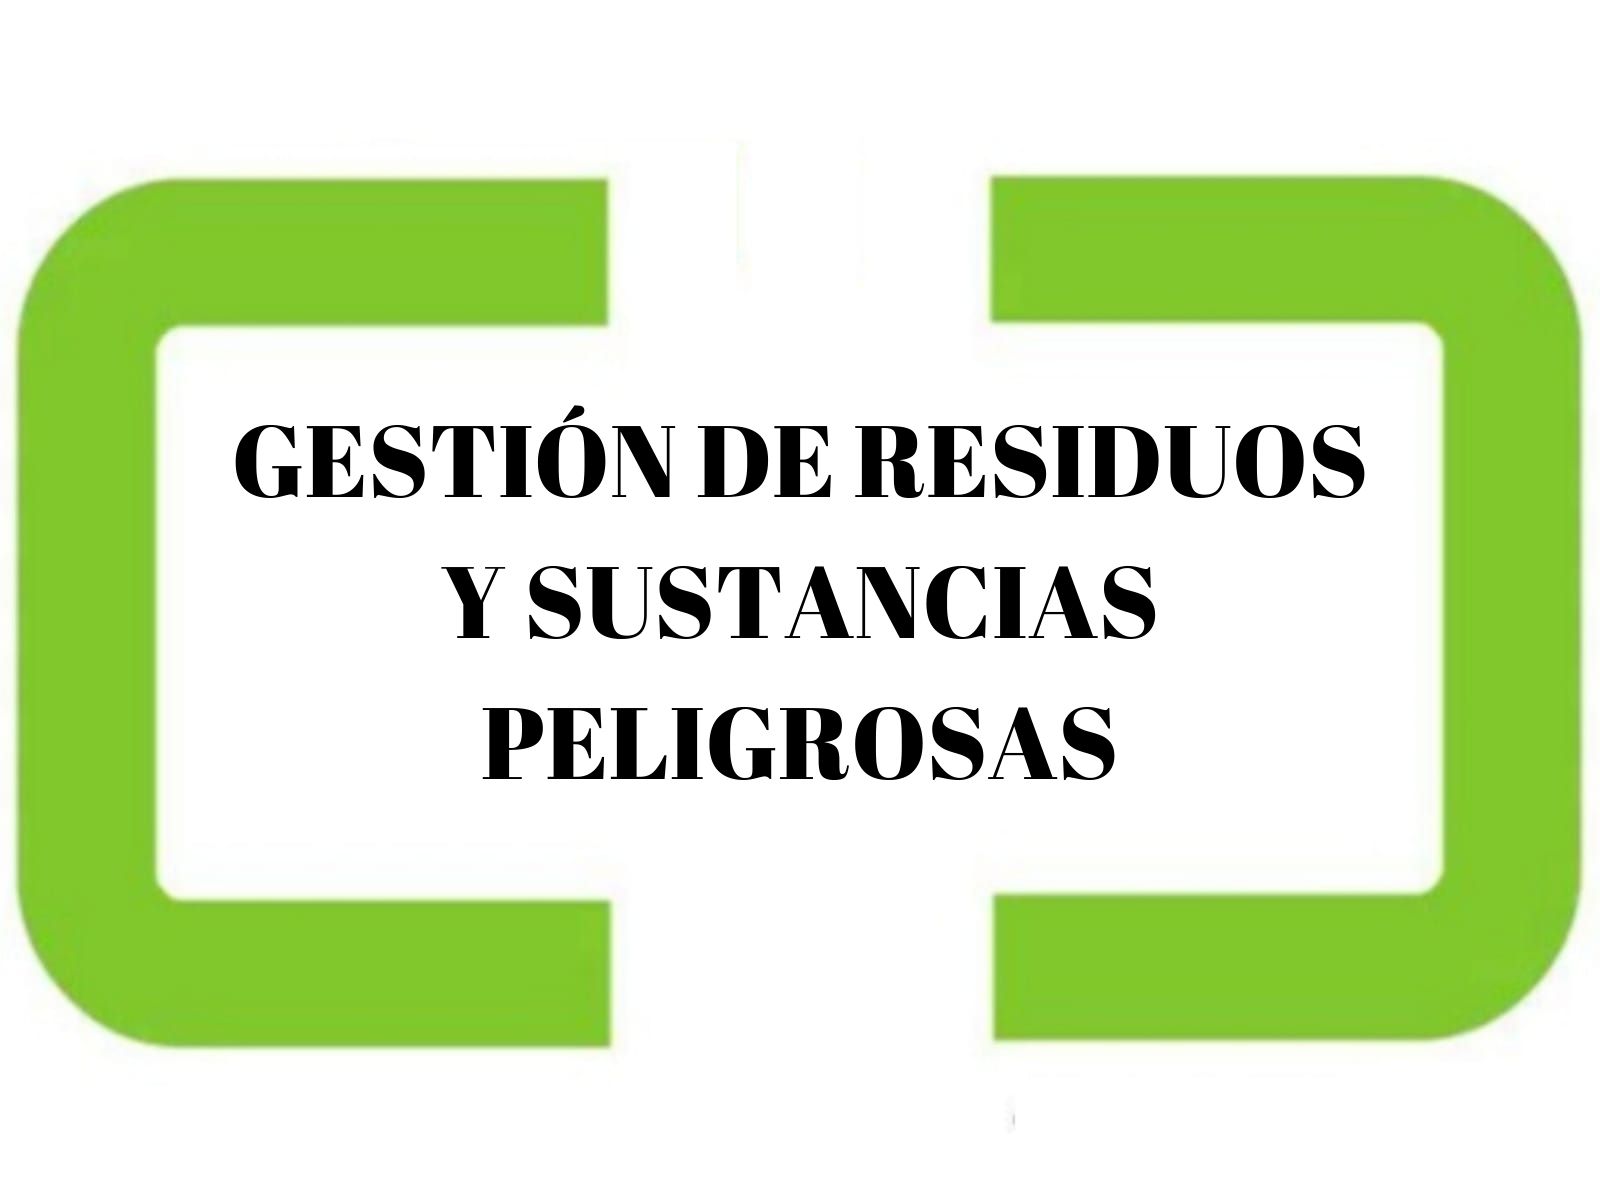 GESTIÓN DE RESIDUOS Y SUSTANCIAS PELIGROSAS